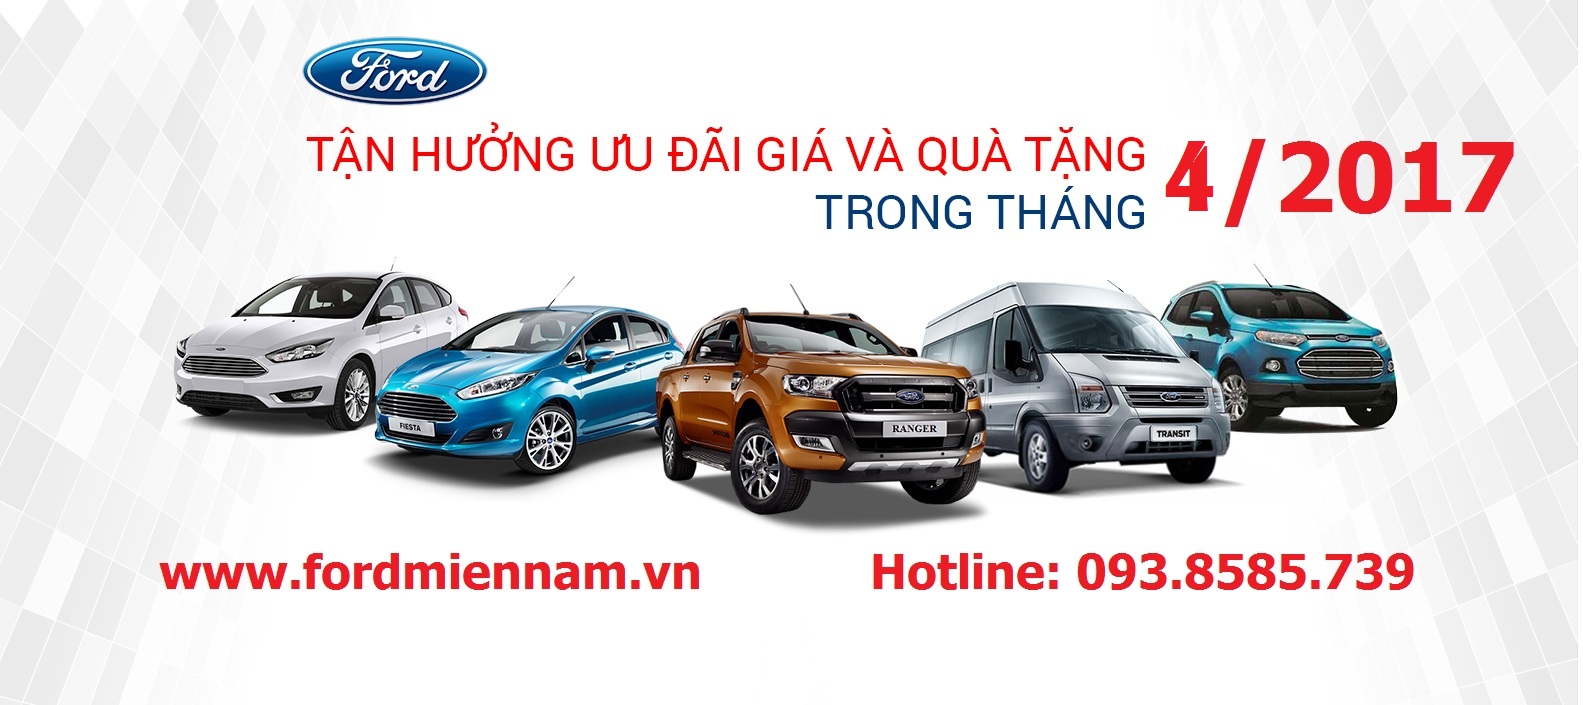 Doanh Số Ấn Tượng Của Ford tại Thị Trường Việt Nam